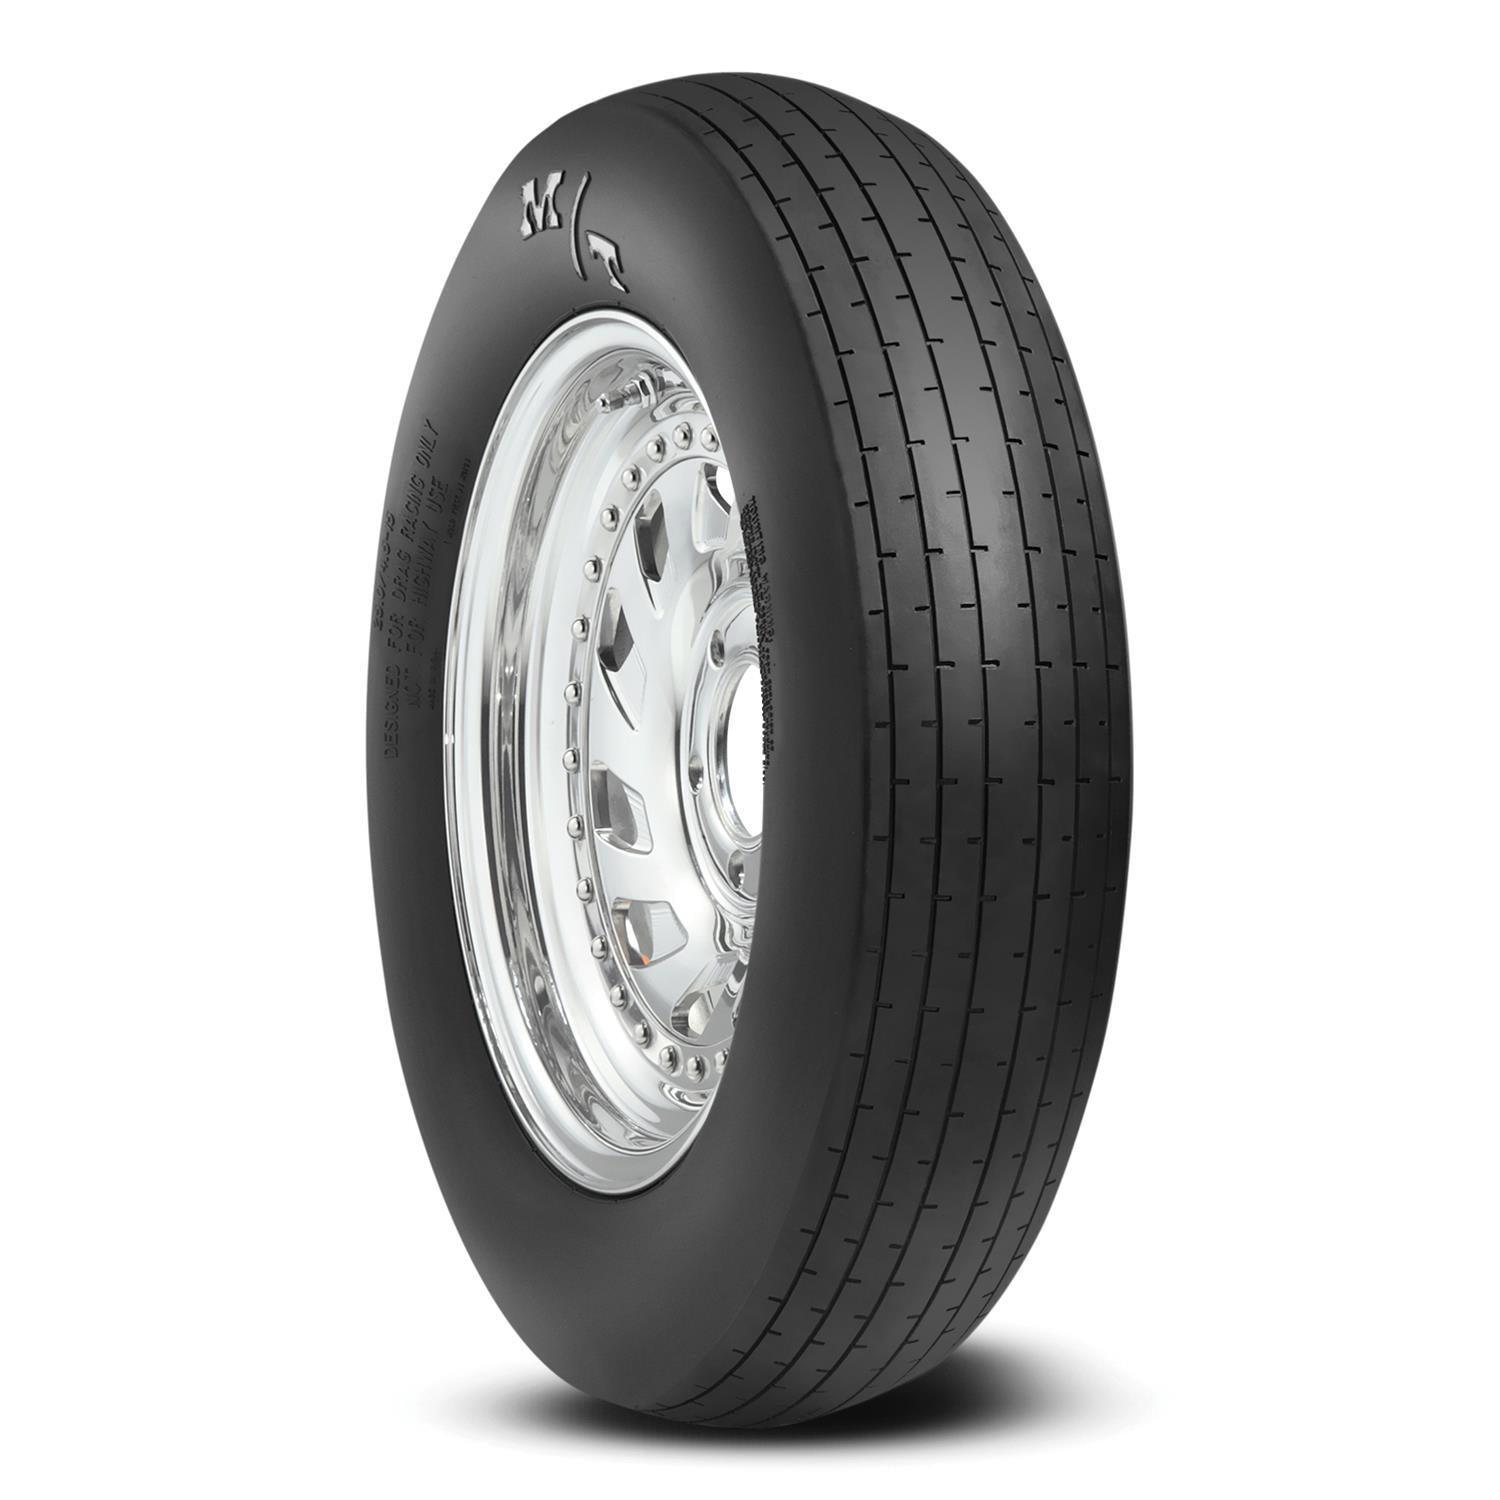 28.0/4.5-15 ET Drag Front Tire - Burlile Performance Products